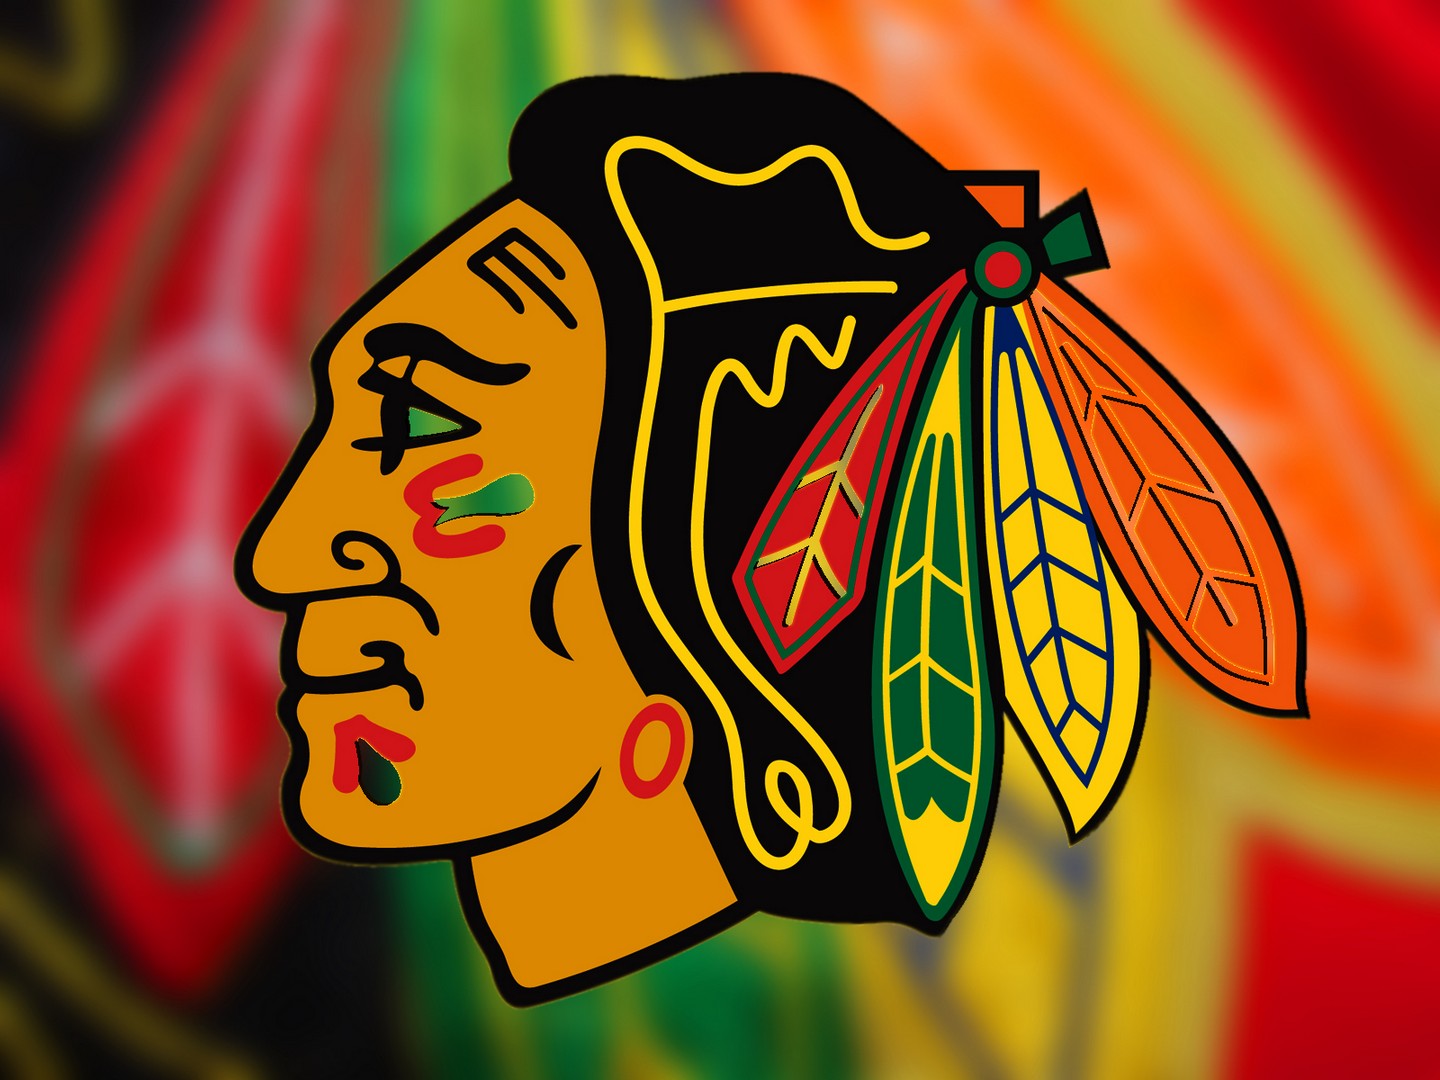 Chicago Blackhawks Background Wallpaper